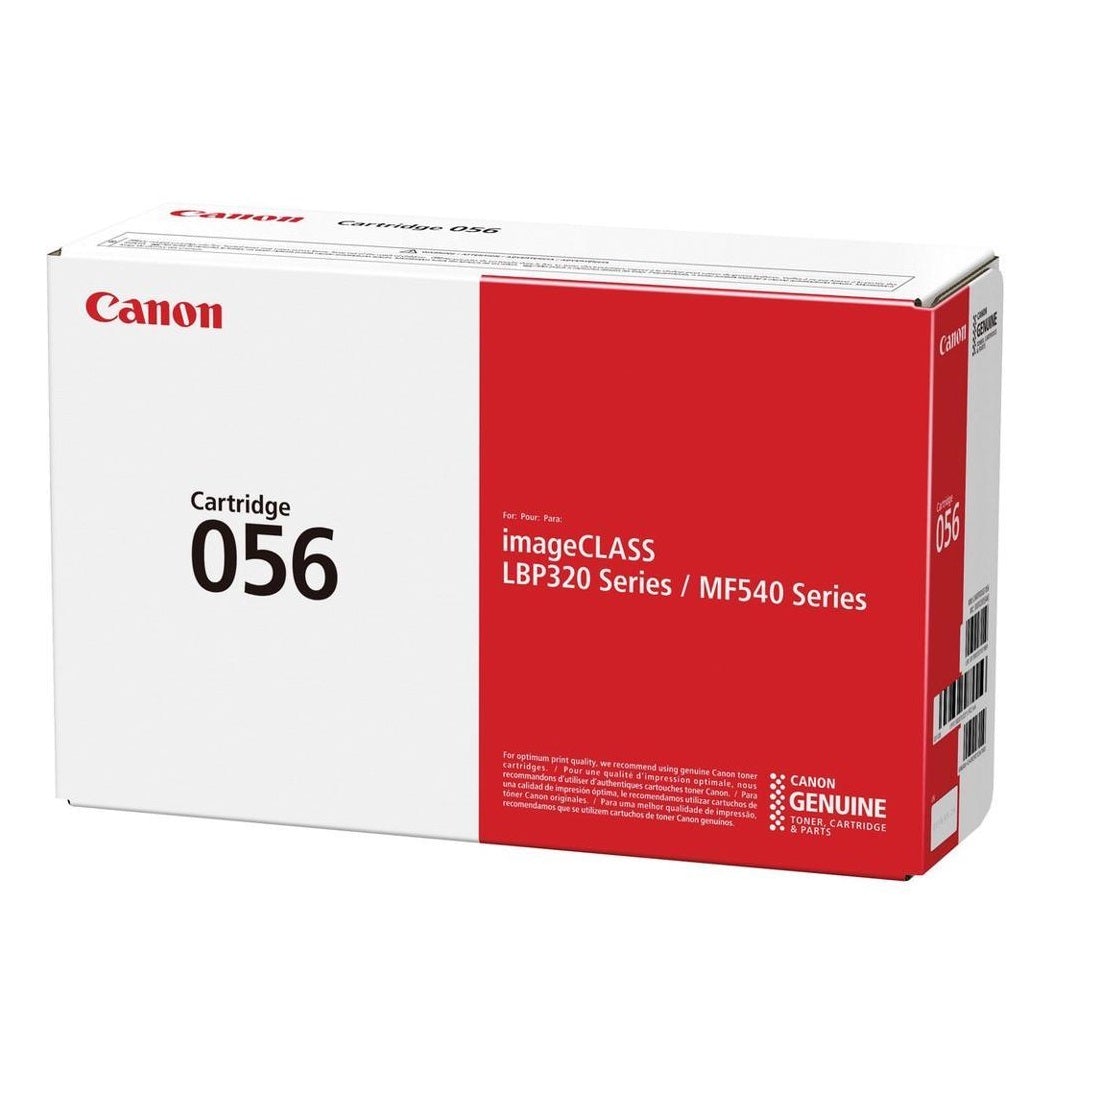 Absolute Toner Canon 056 Black Original Genuine OEM Toner Cartridge | 3007C001 Canon Toner Cartridges